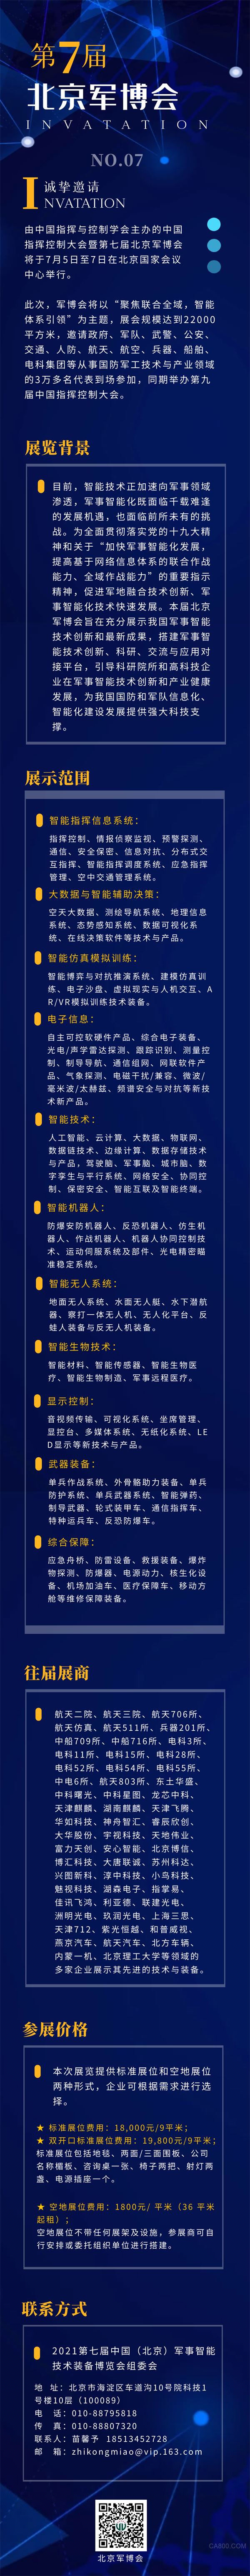 第七届北京军博会向大家发出诚挚邀请：7月相约北京，不见不散